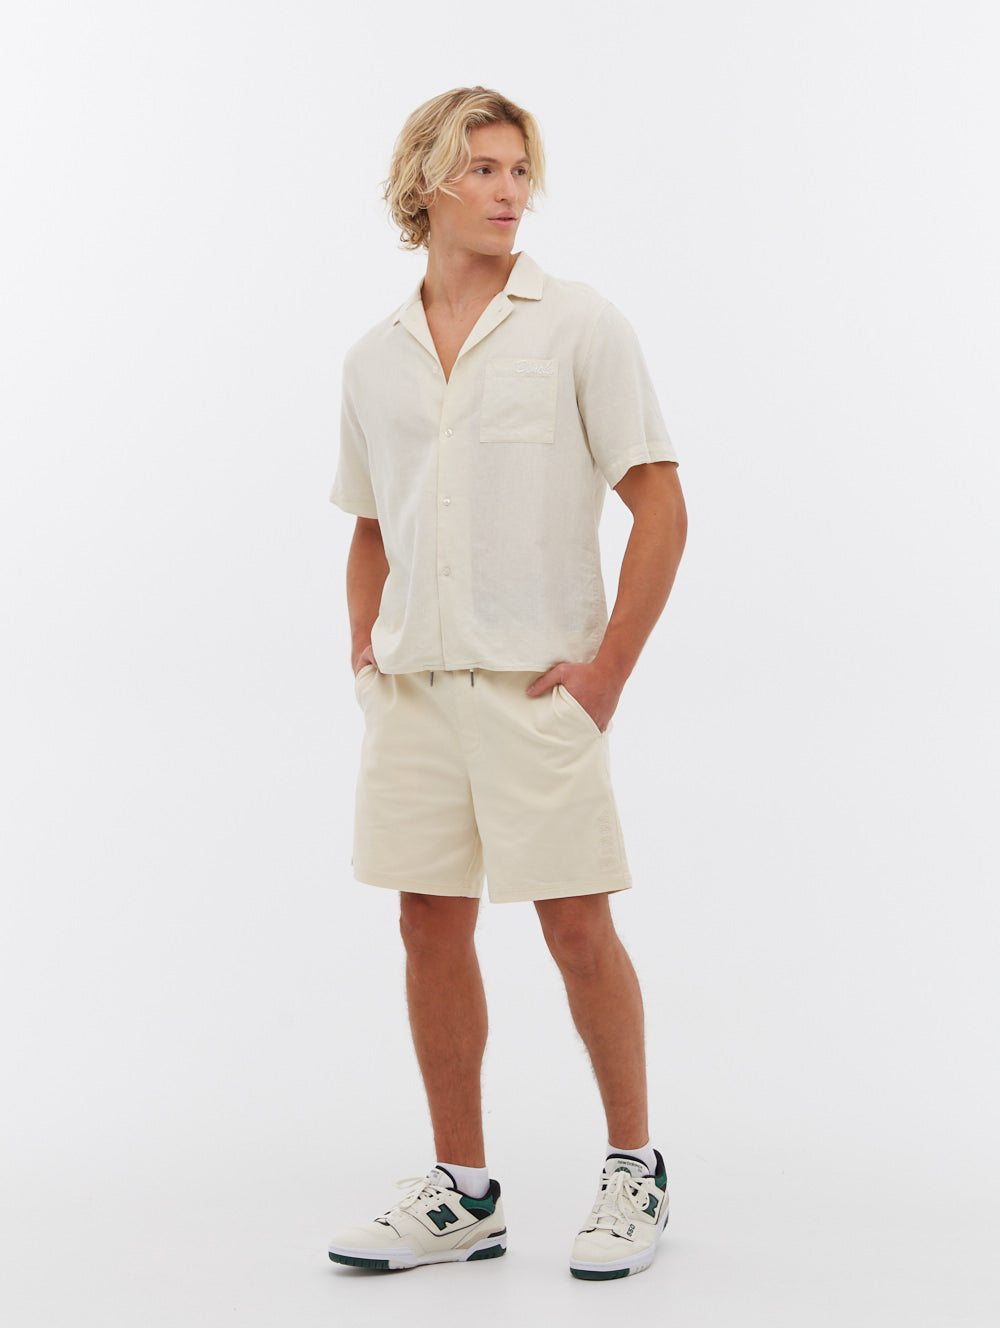 Multi-Sport 2N1 Short - Men's Sportwear – SAXX Underwear Canada